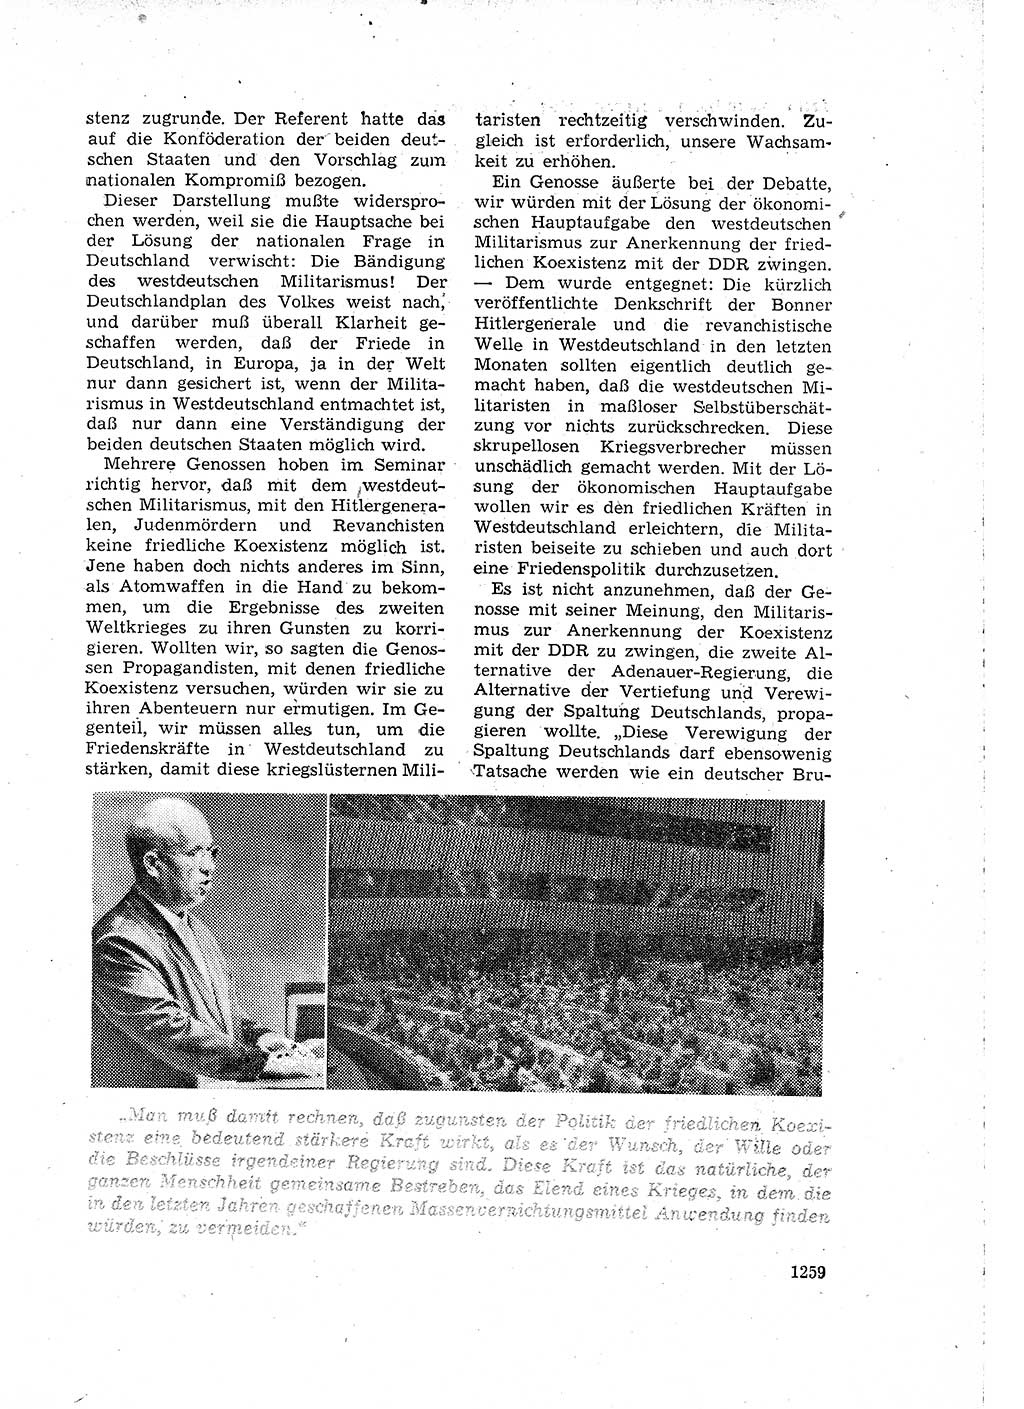 Neuer Weg (NW), Organ des Zentralkomitees (ZK) der SED (Sozialistische Einheitspartei Deutschlands) für Fragen des Parteilebens, 15. Jahrgang [Deutsche Demokratische Republik (DDR)] 1960, Seite 1259 (NW ZK SED DDR 1960, S. 1259)